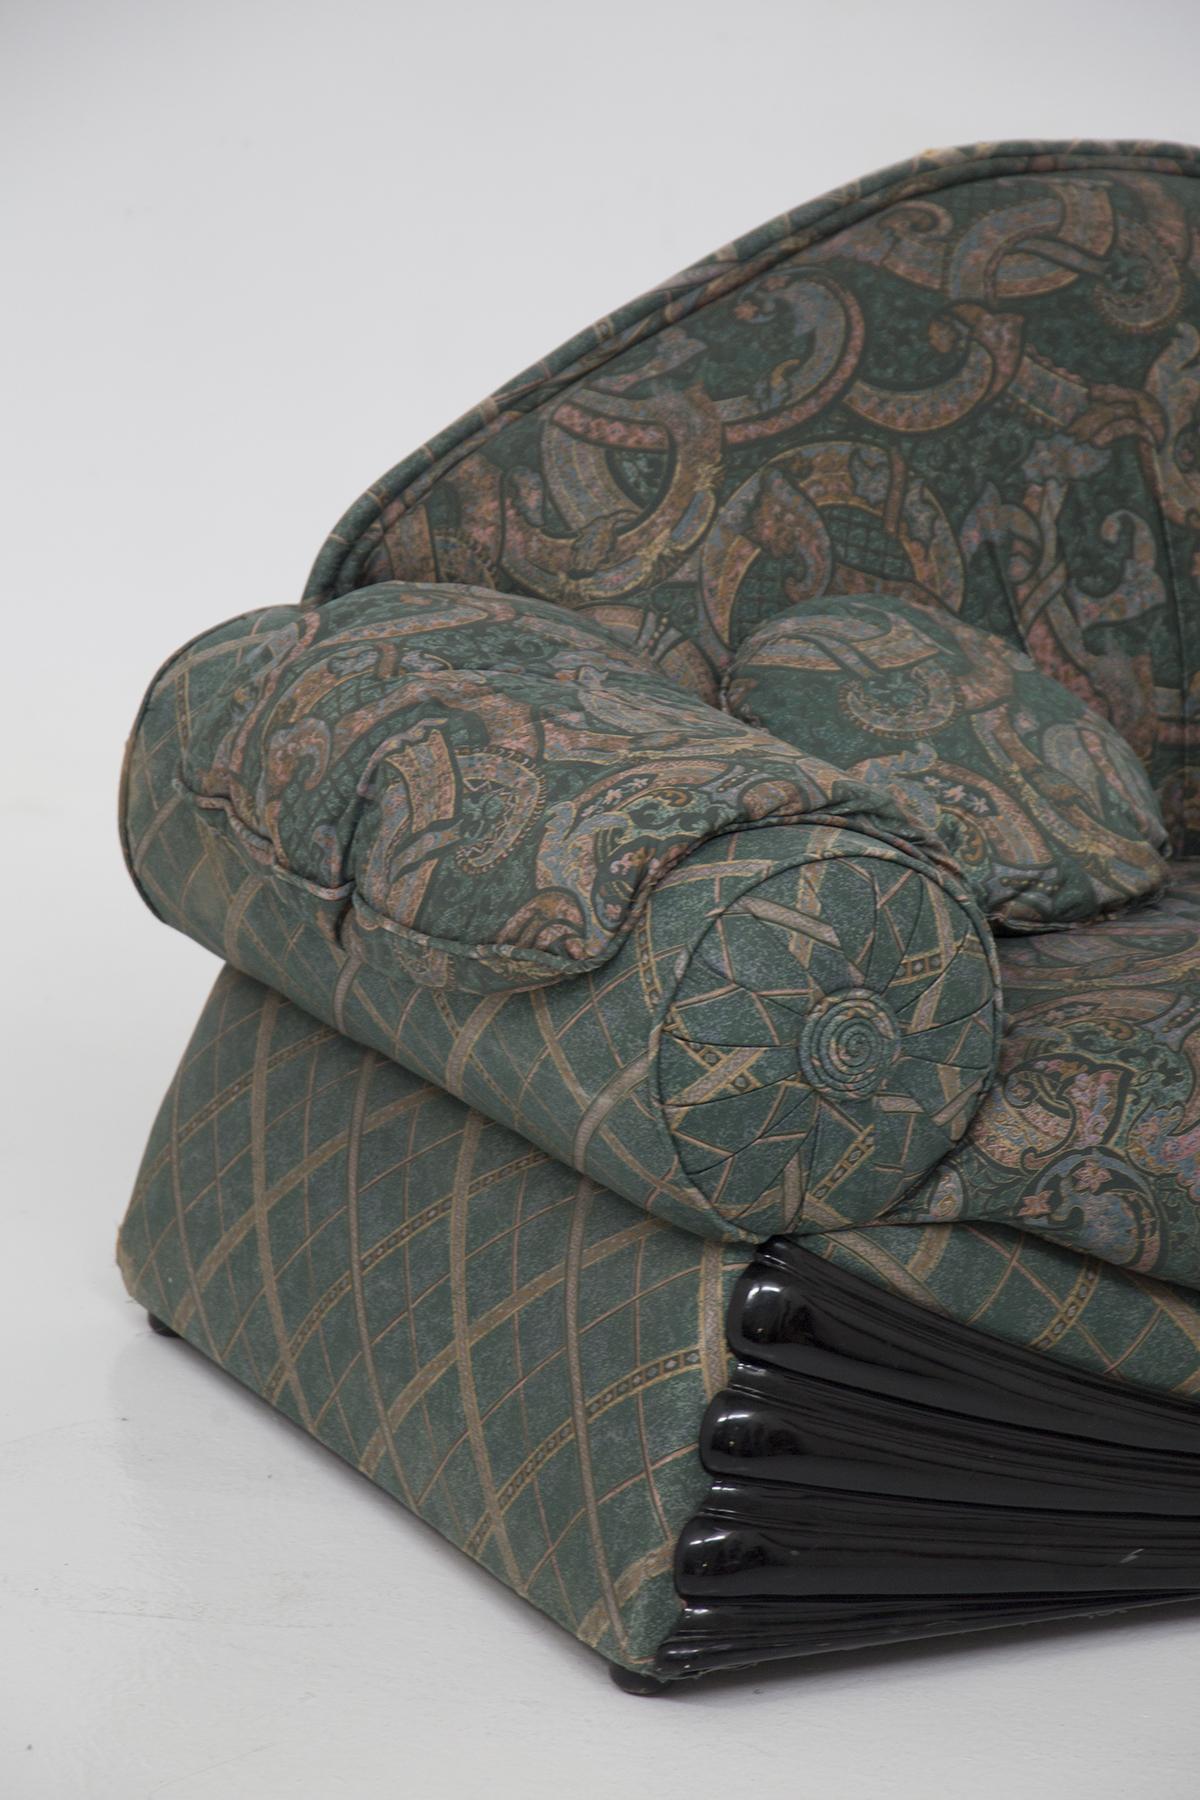 Étonnante paire de canapés conçus dans les années 1970, de fabrication italienne.
Les canapés sont très spéciaux, en effet ils ont une forme d'arabesque incroyablement charmante.
La forme est évasée vers le bas, rappelant la figure du trapèze.
La